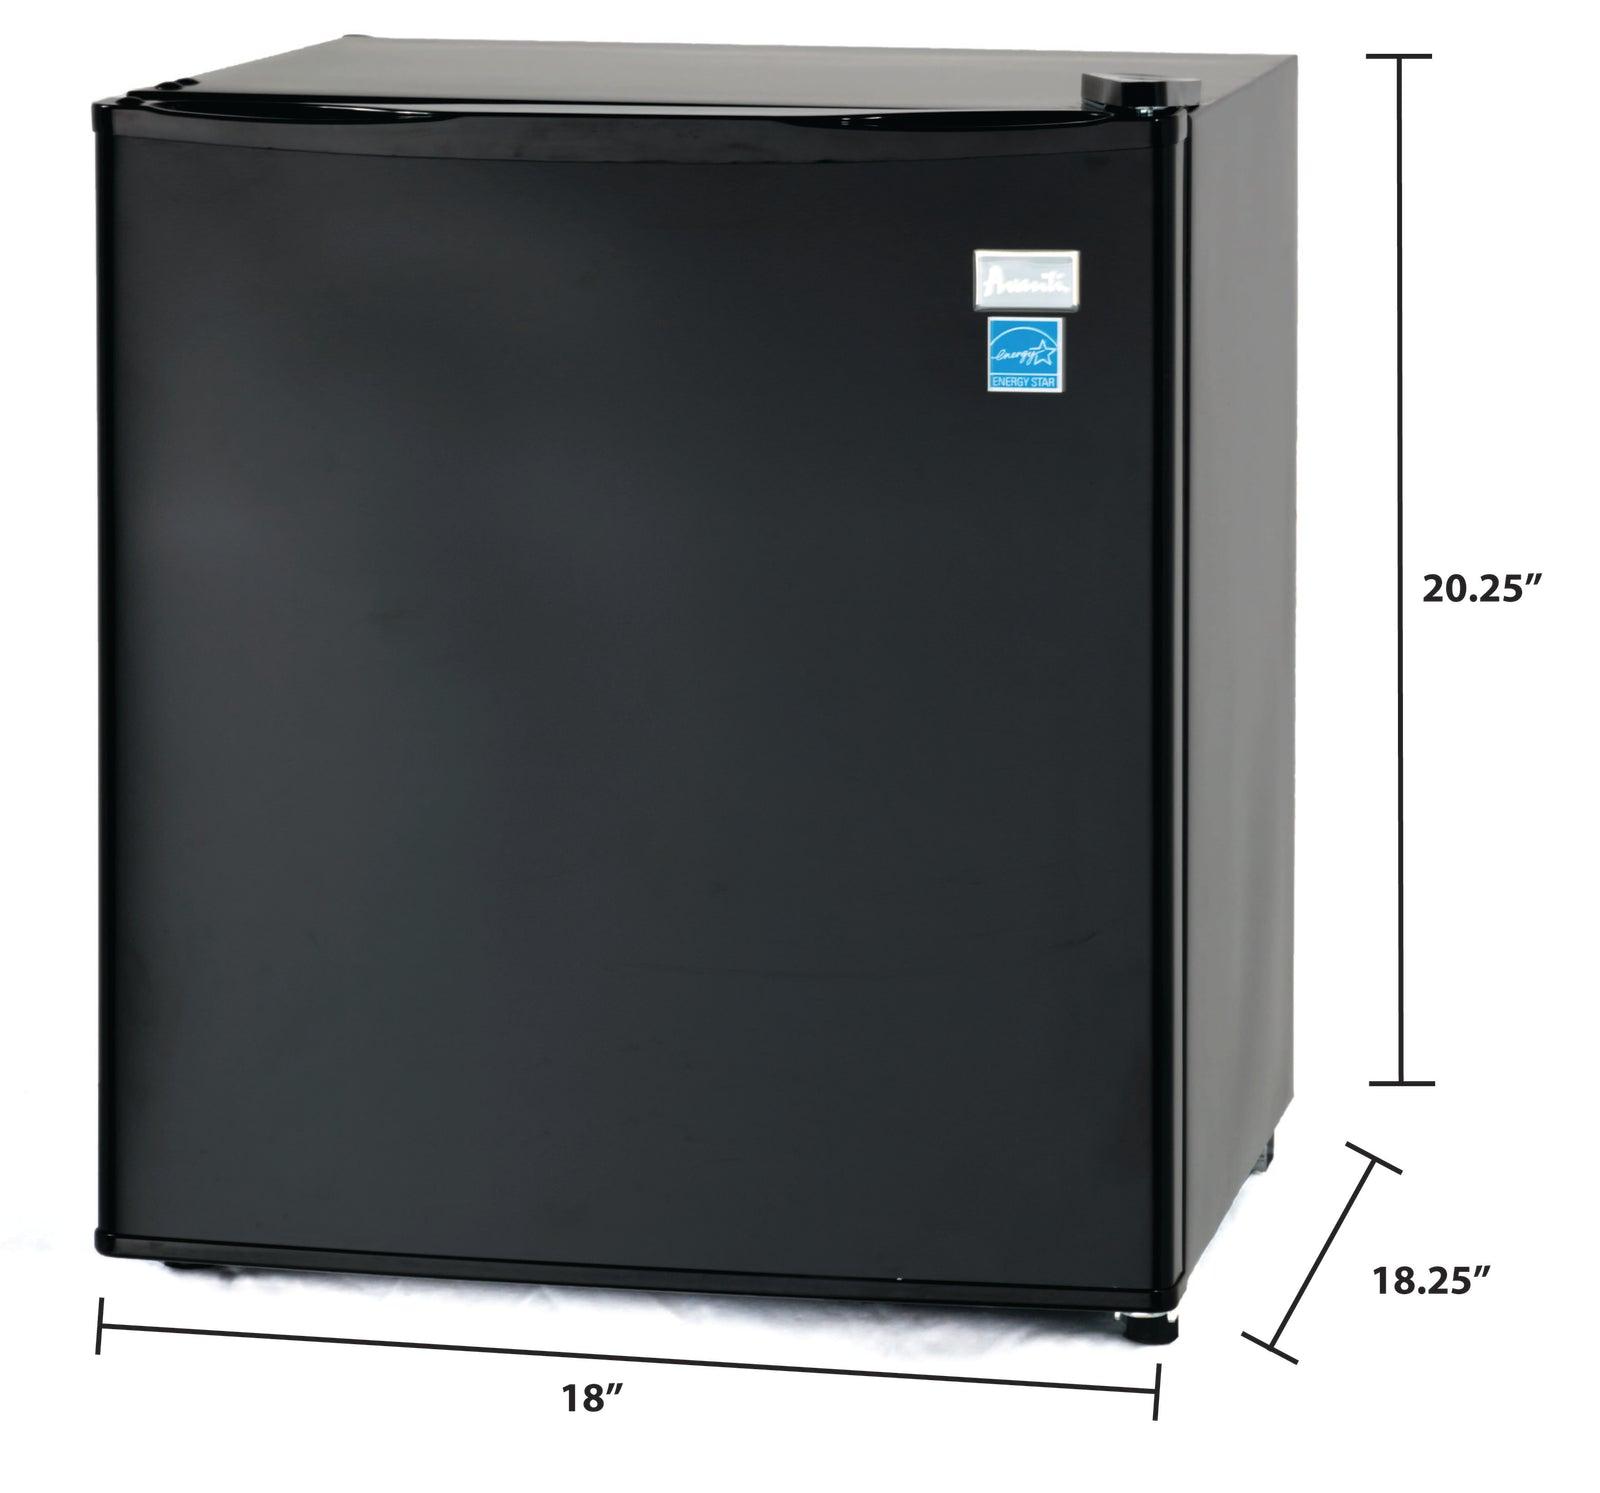 Avanti 1.7 cu. ft. Compact Refrigerator - White / 1.7 cu. ft.